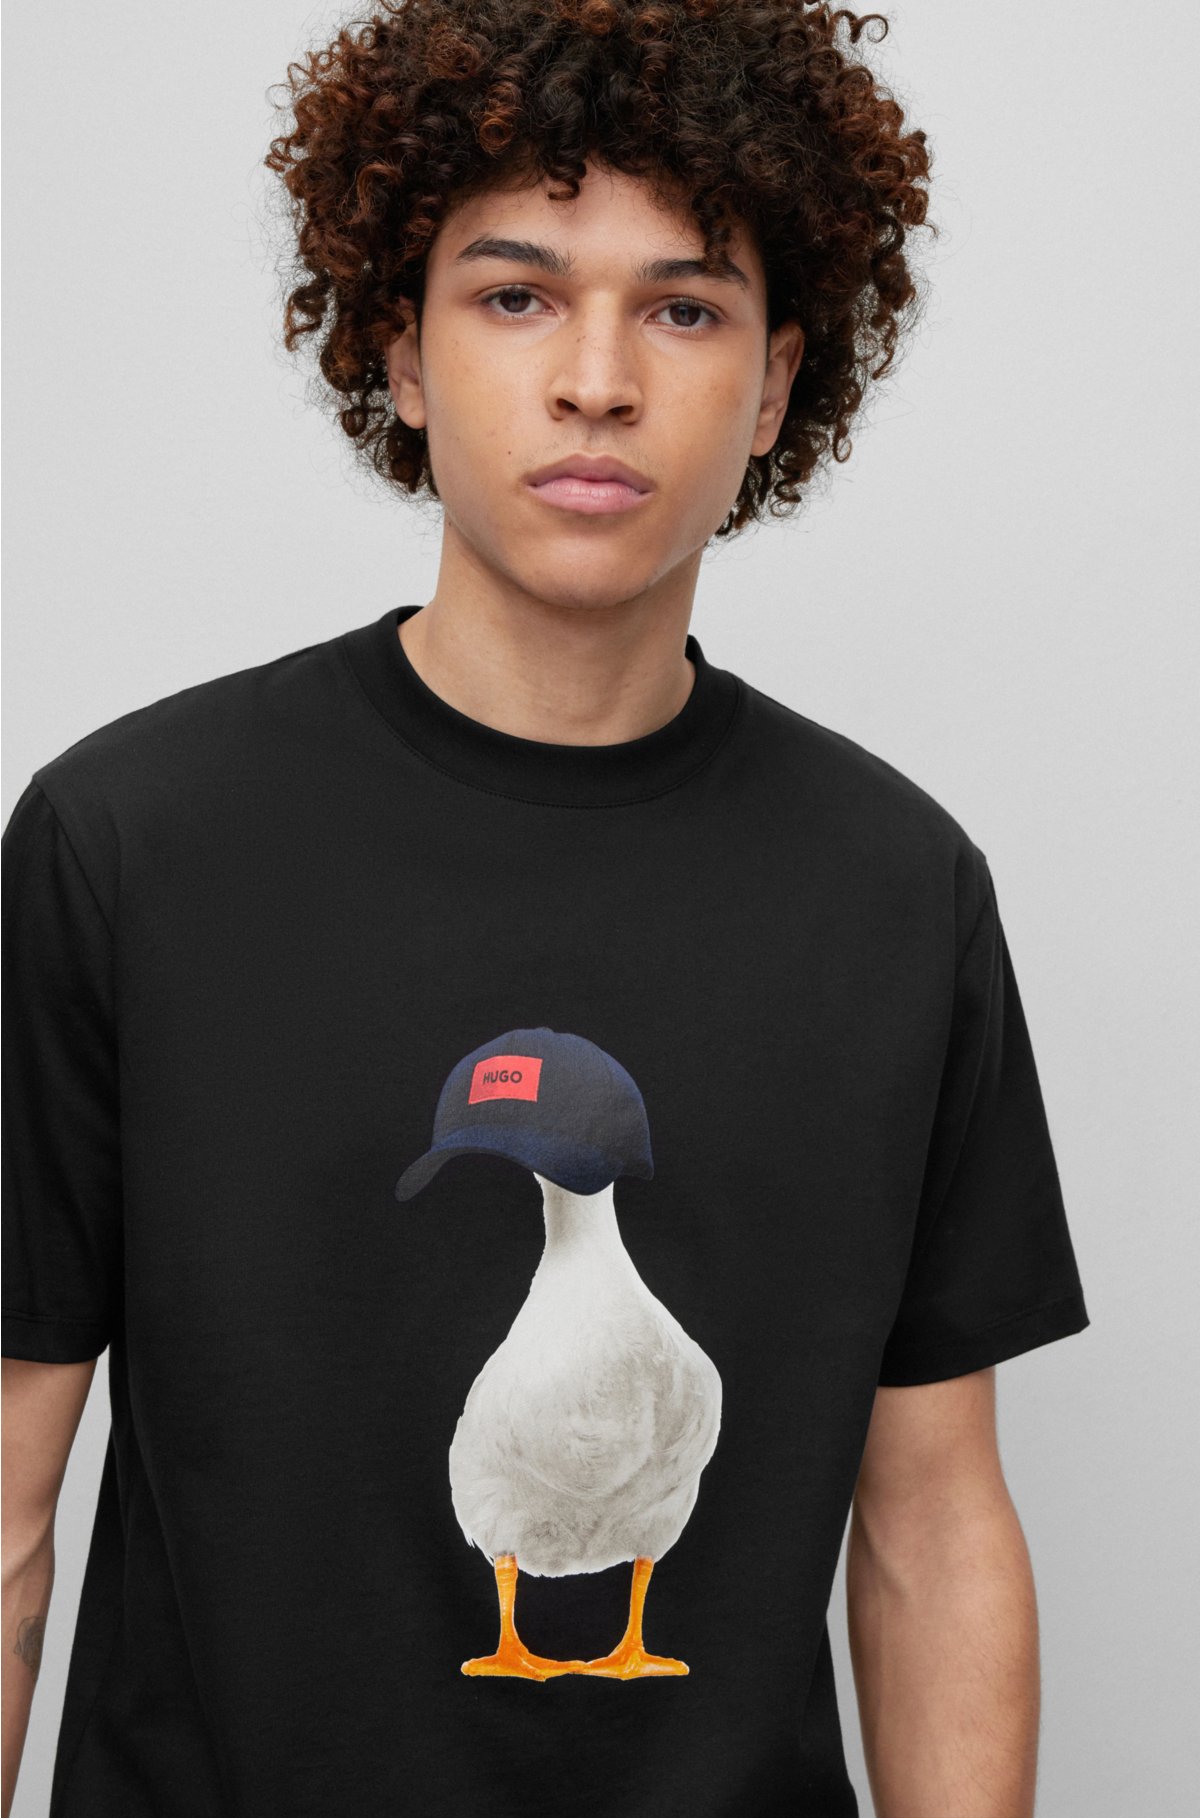 BOSS duck-print Detail T-shirt - Farfetch